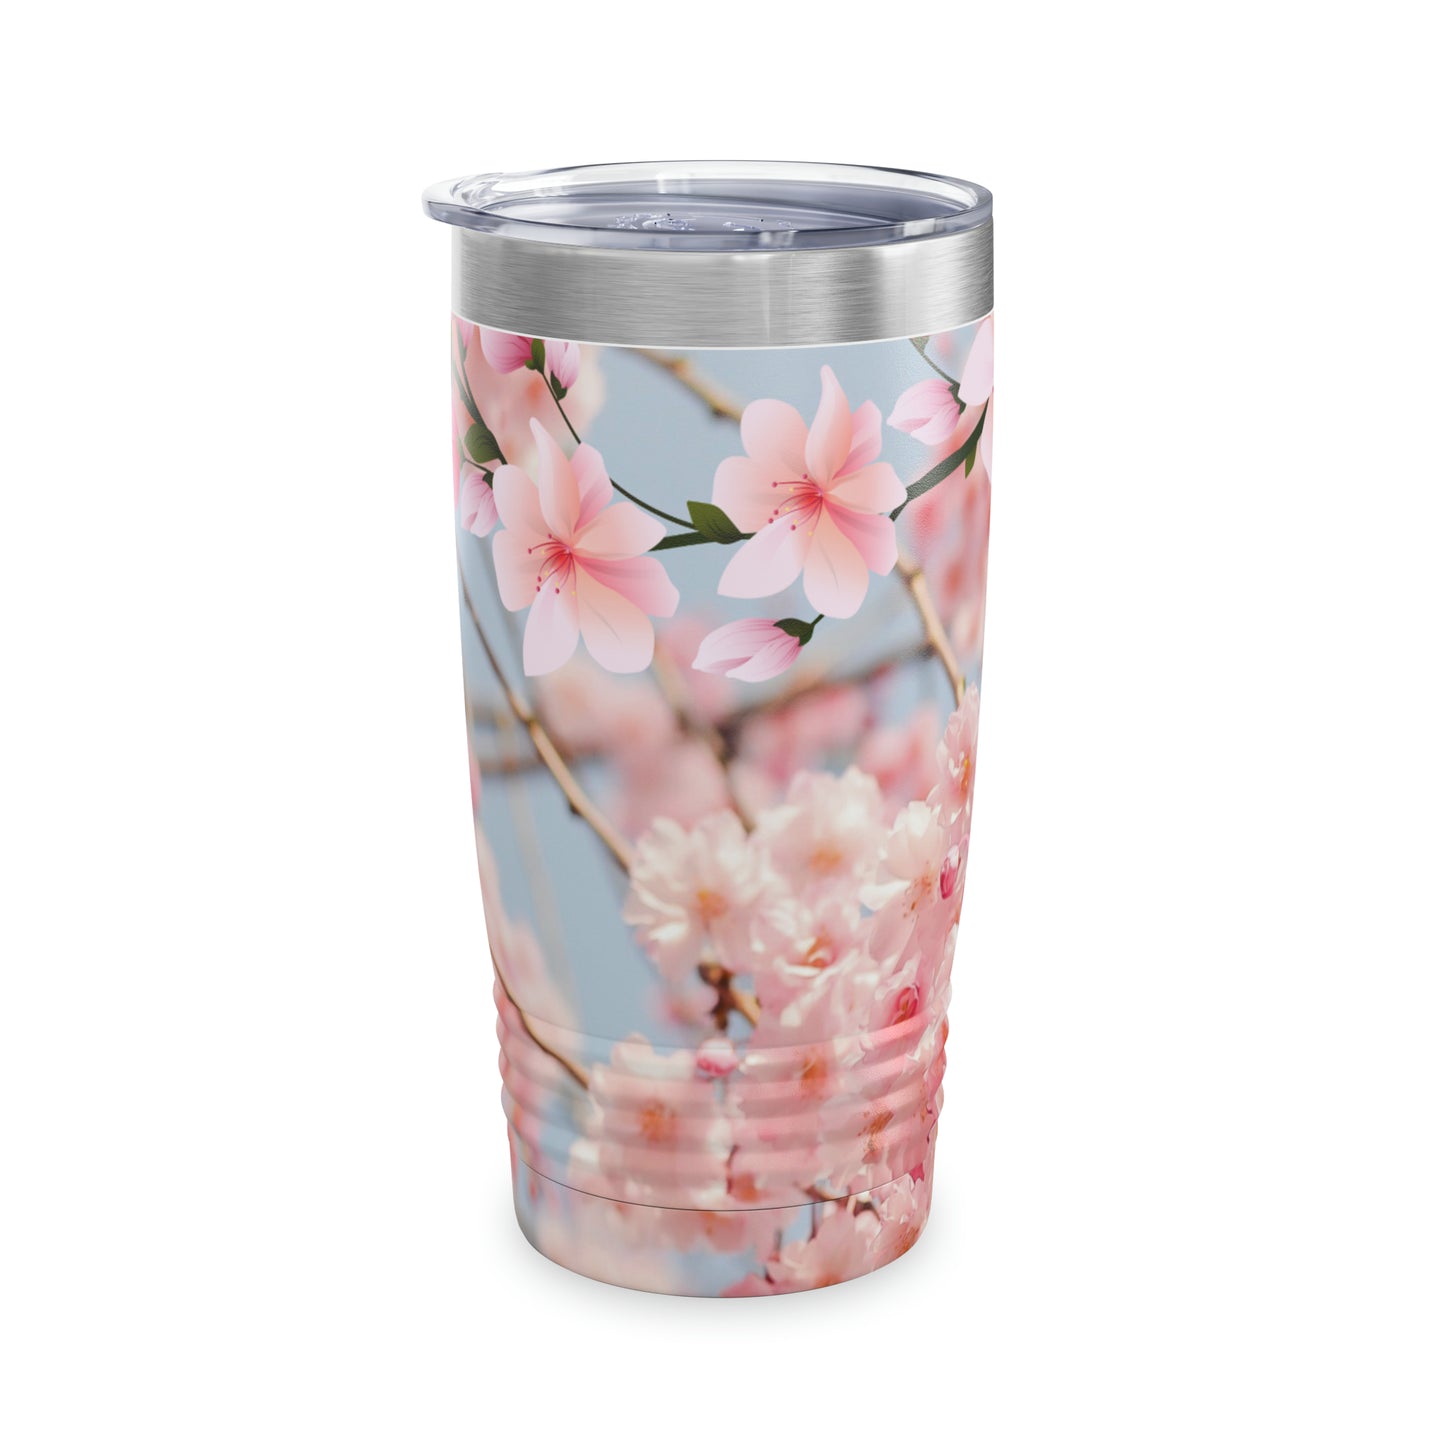 Cherry Blossom Ringneck Tumbler, 20oz, Gift For Her, Gift For Him, drinkware, premium stainless steel tumbler